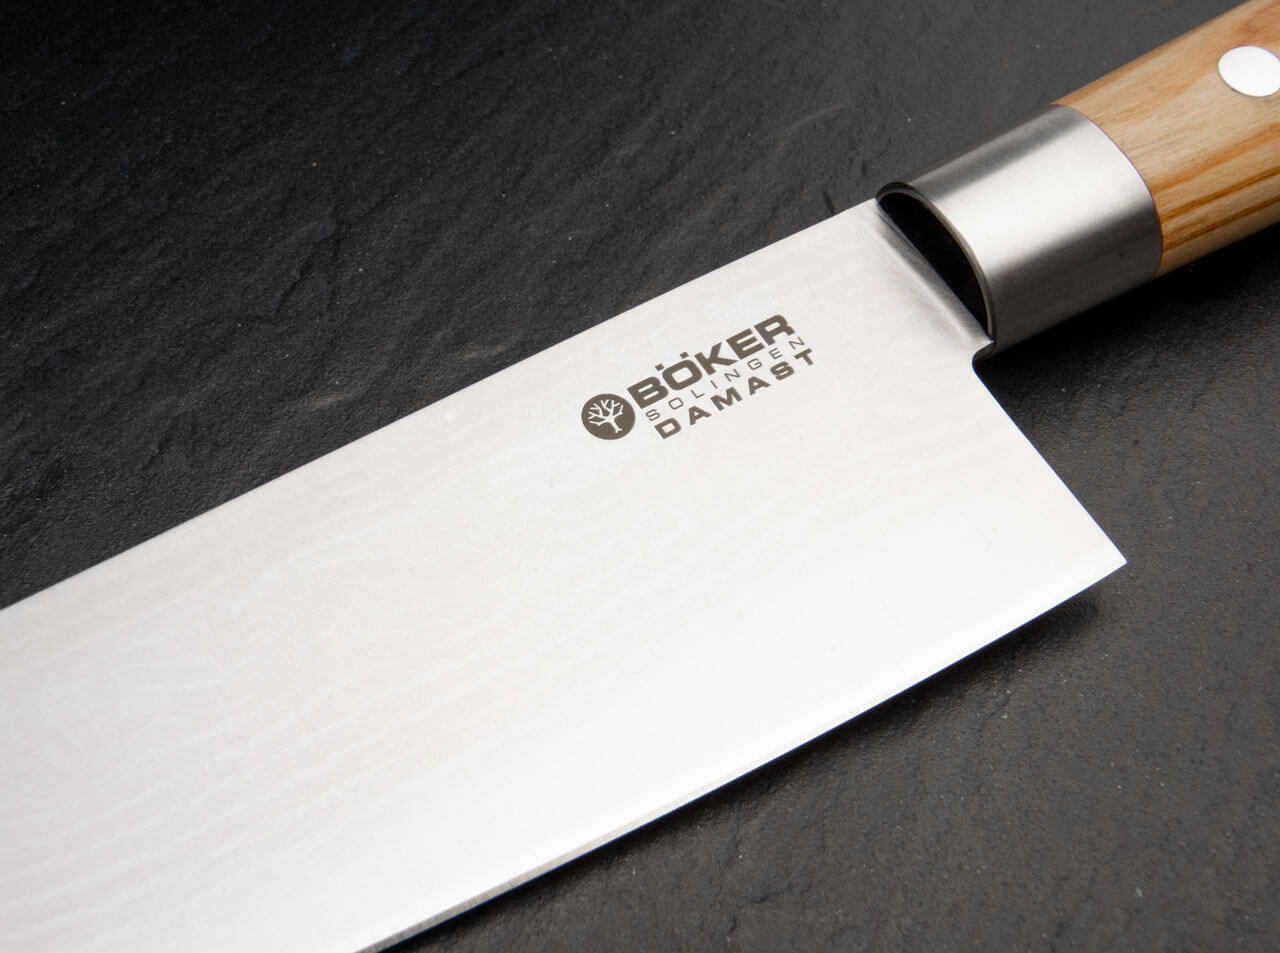 https://www.bokerusa.com/media/image/a3/5a/2a/boeker-manufaktur-solingen-damast-olive-chef-s-knife-large-130441dam_5.jpg